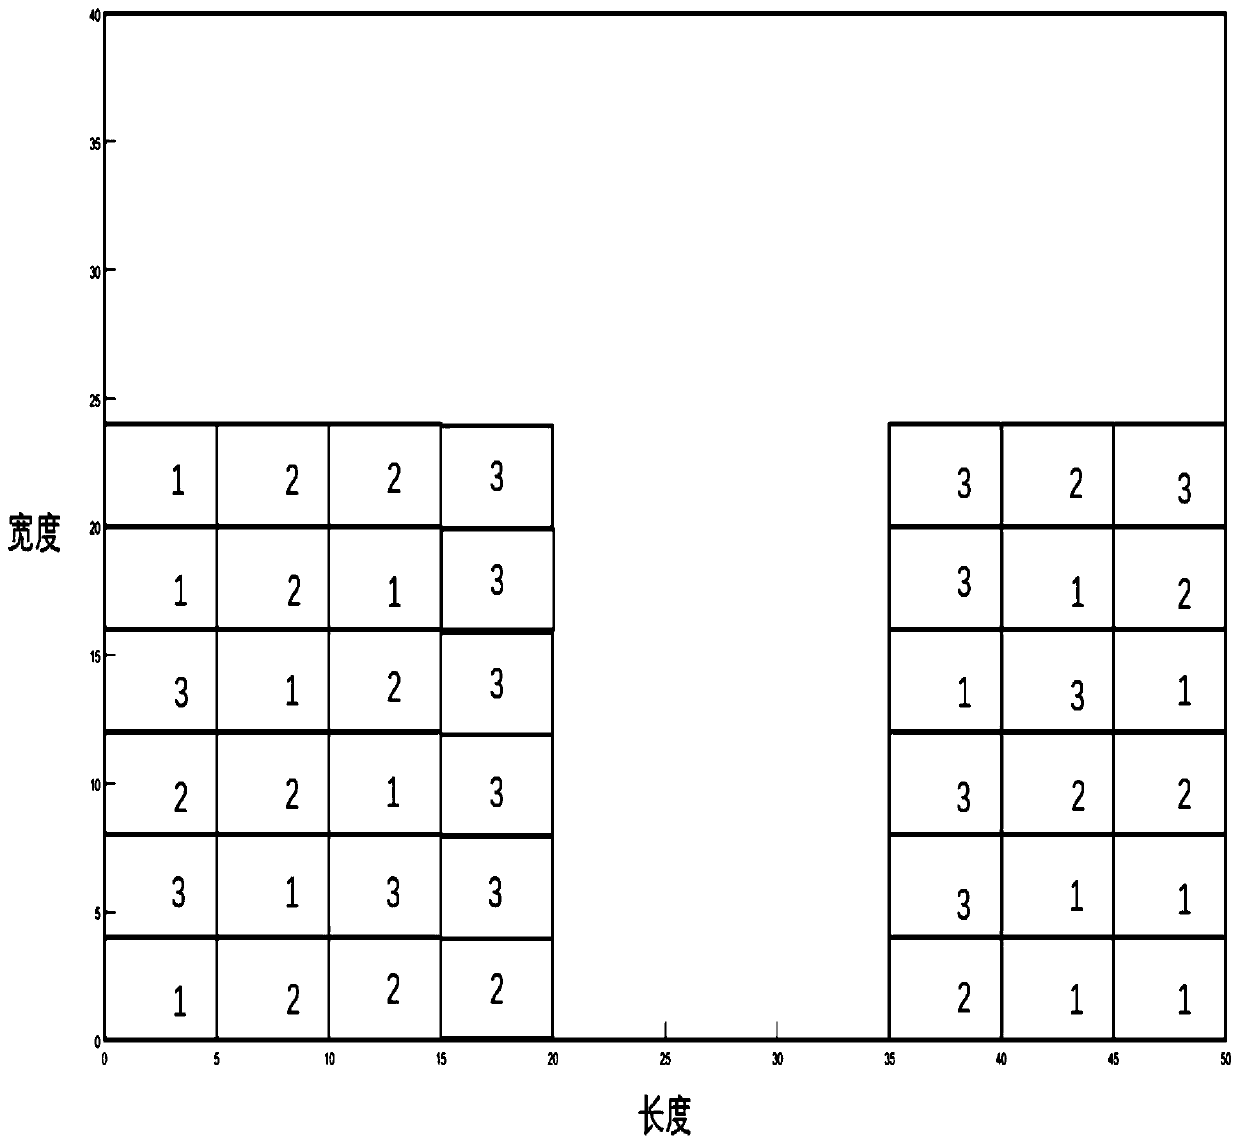 Three-acid chemical warehouse goods location layout method based on particle swarm optimization algorithm